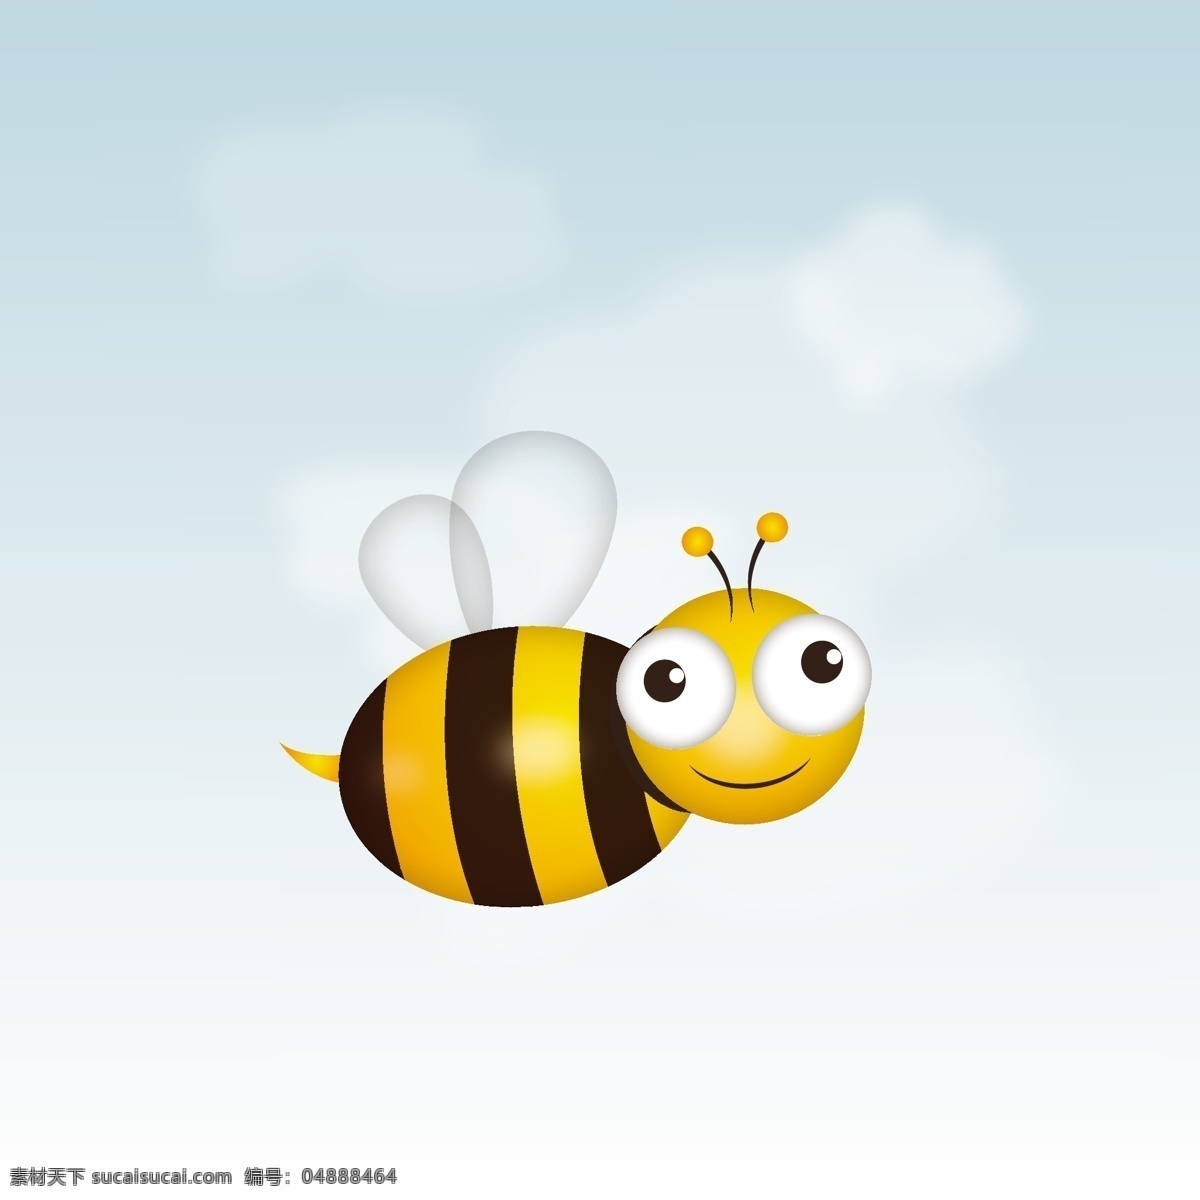 卡通 蜜蜂 插画 矢量 昆虫 动物 云朵 白云 翅膀 大眼睛 背景 海报 画册 矢量动物 生物世界